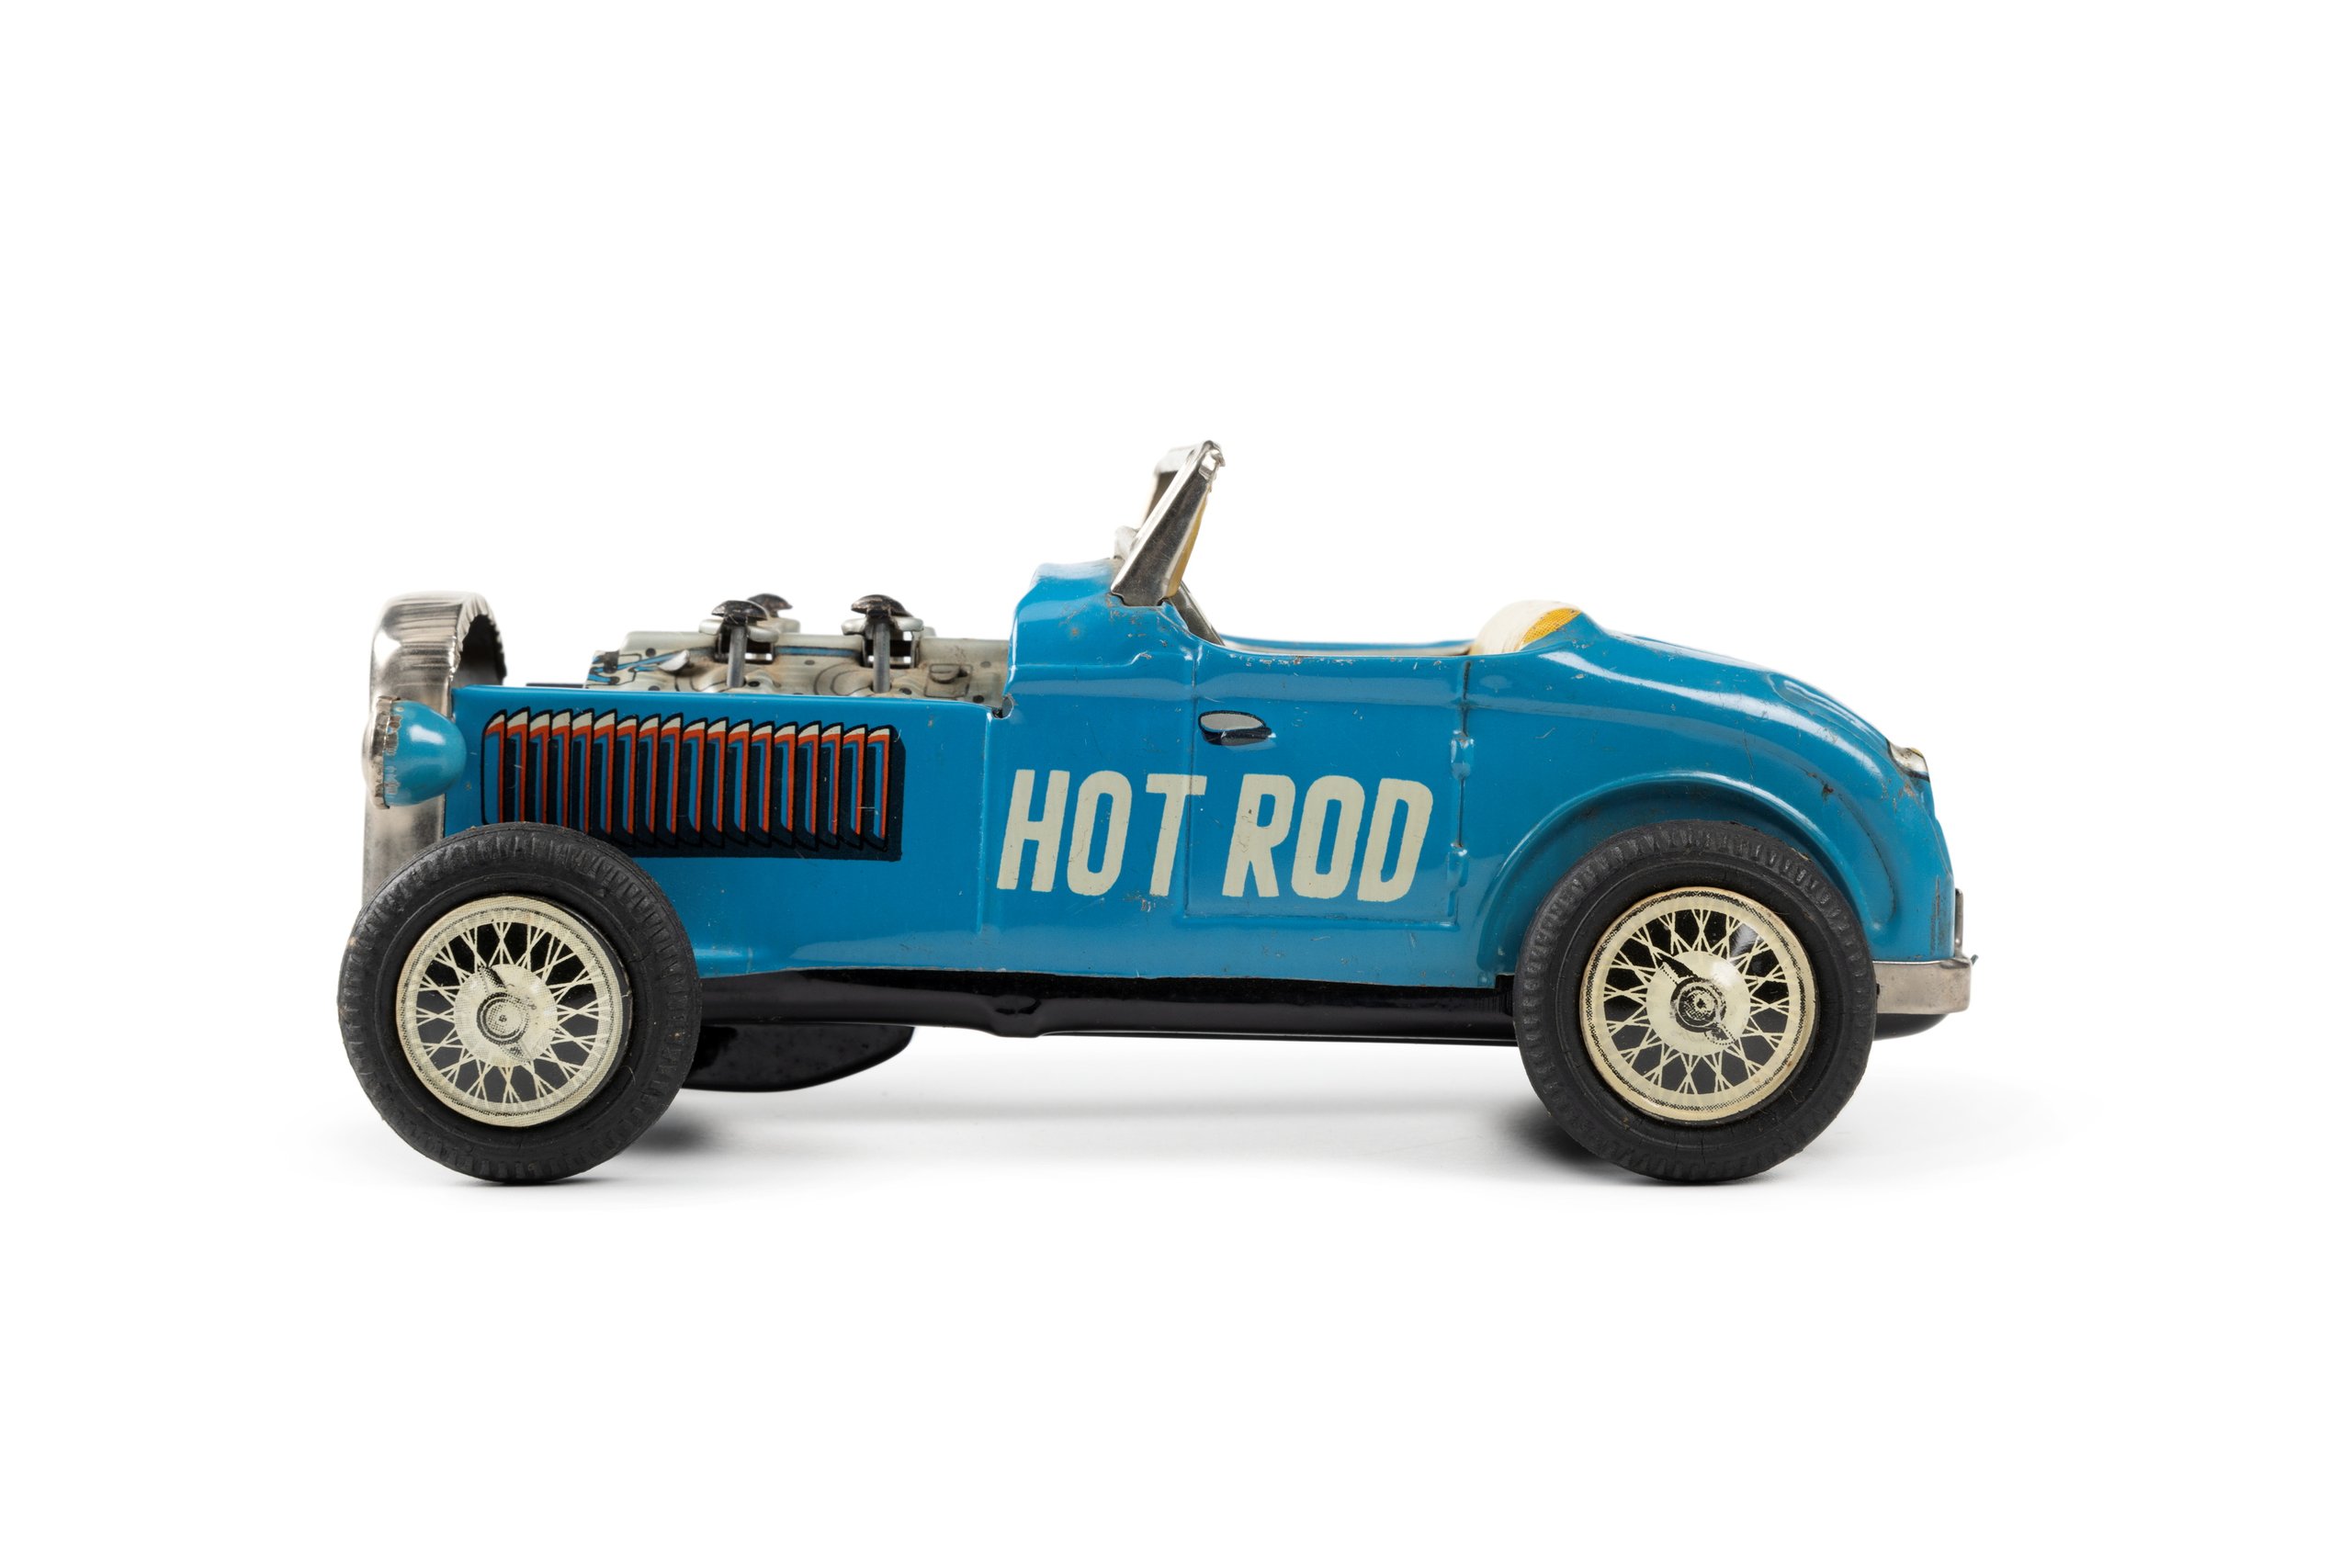 Toy car 'Century Hot Rod' made by Nomura